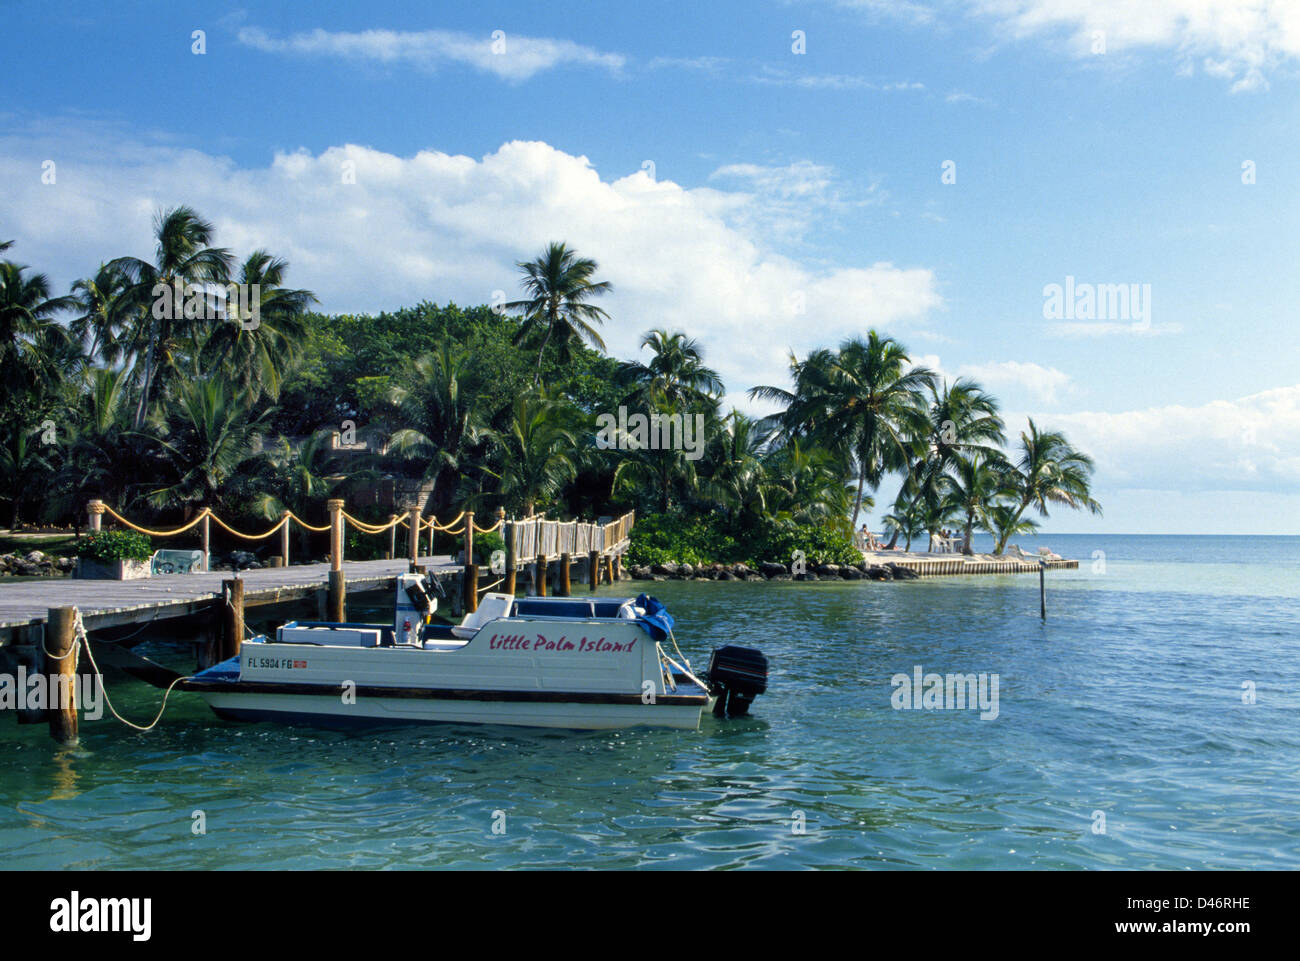 Gli ospiti possono usufruire di camere tropicali a Little Palm Island Resort, con un breve tragitto in barca da poco tasto torcia in Florida Keys. Foto Stock